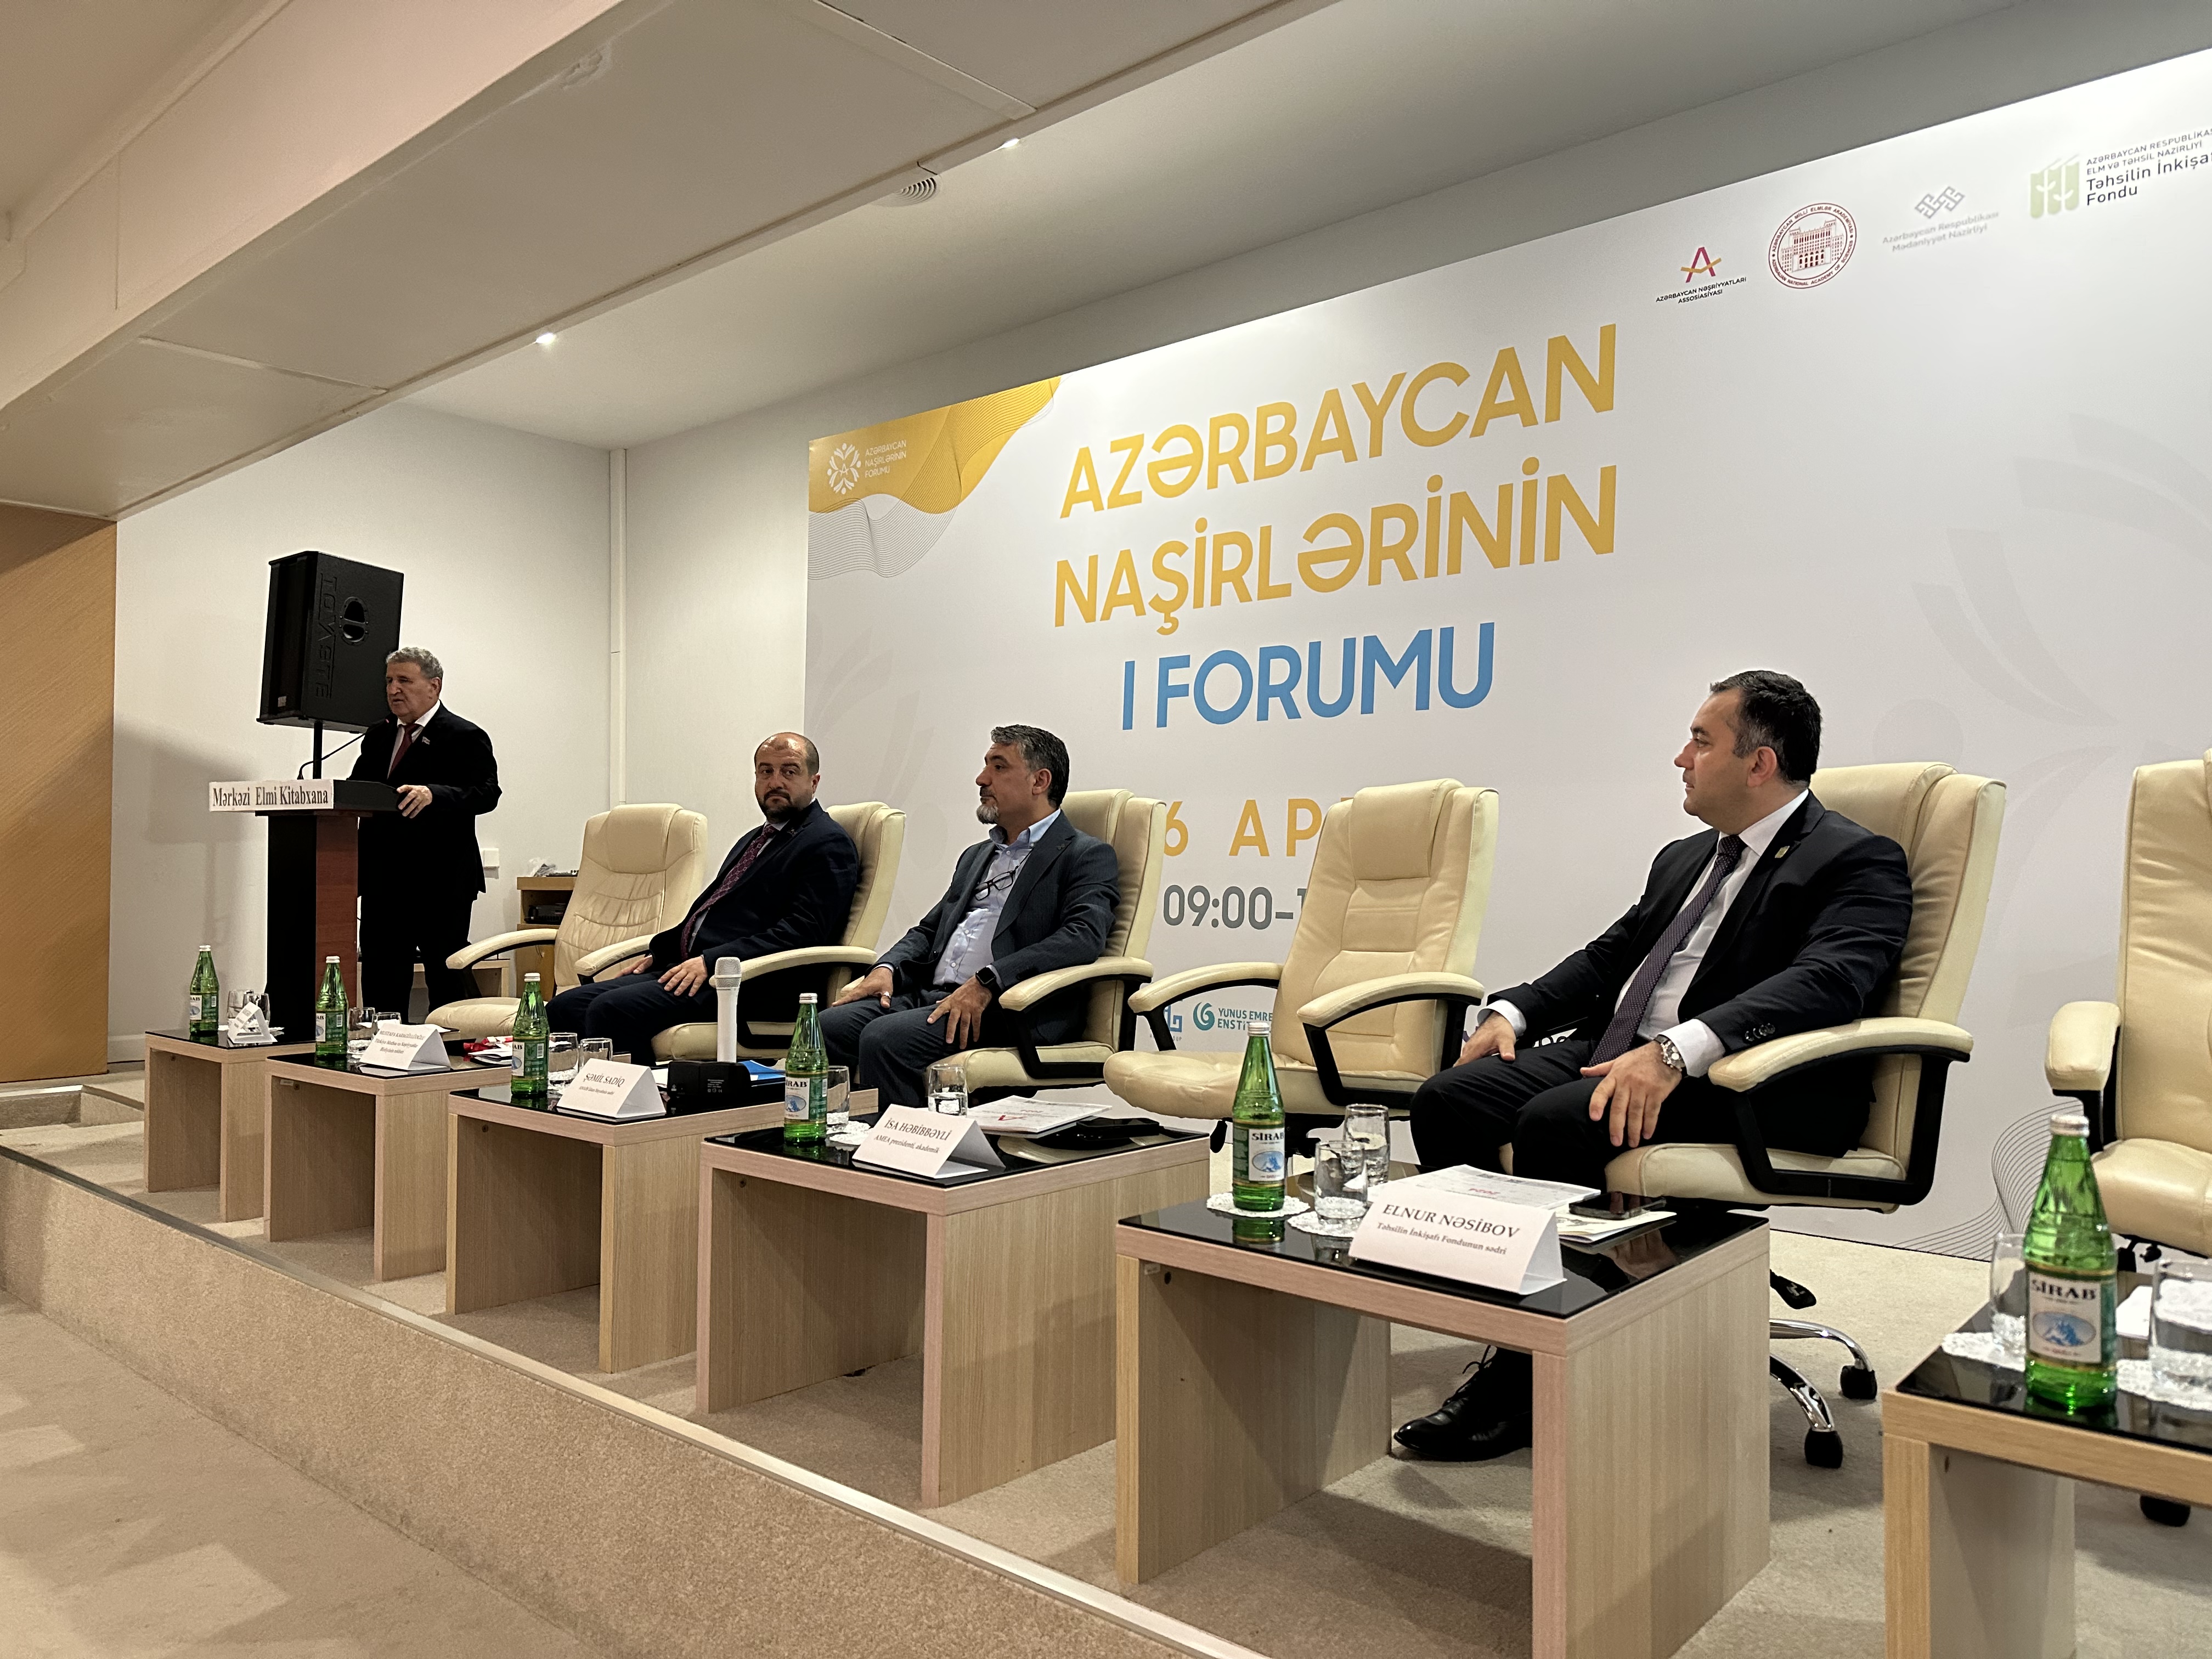 Azərbaycan naşirlərinin I forumu keçirilir - YENİLƏNİR 